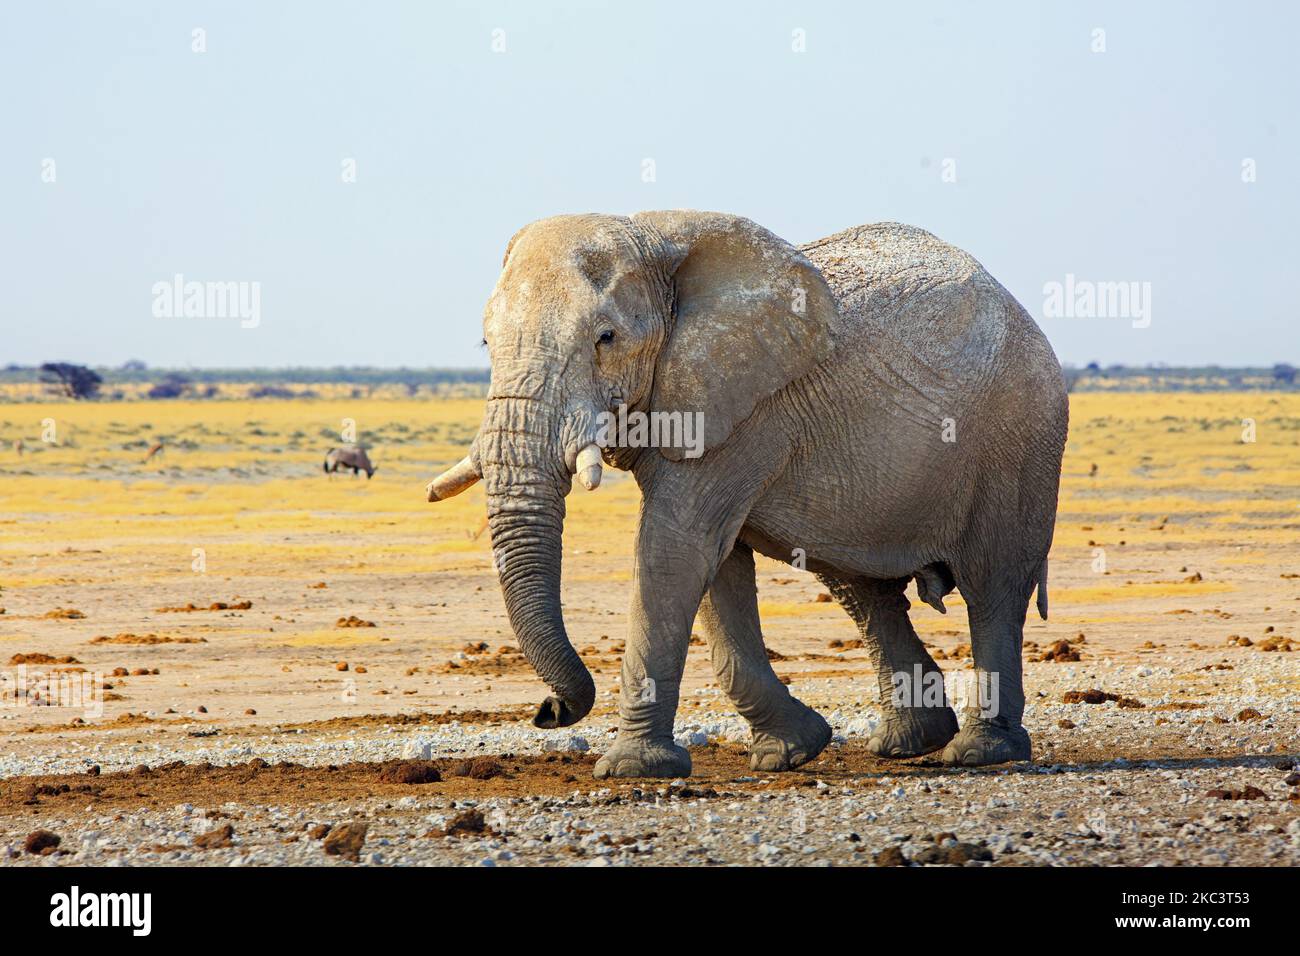 Lebendiges Bild eines großen afrikanischen Elefanten, der durch die trockenen Ebenen mit einer getrockneten, gelben Grassavanne und blauem Himmelshintergrund geht. Stockfoto